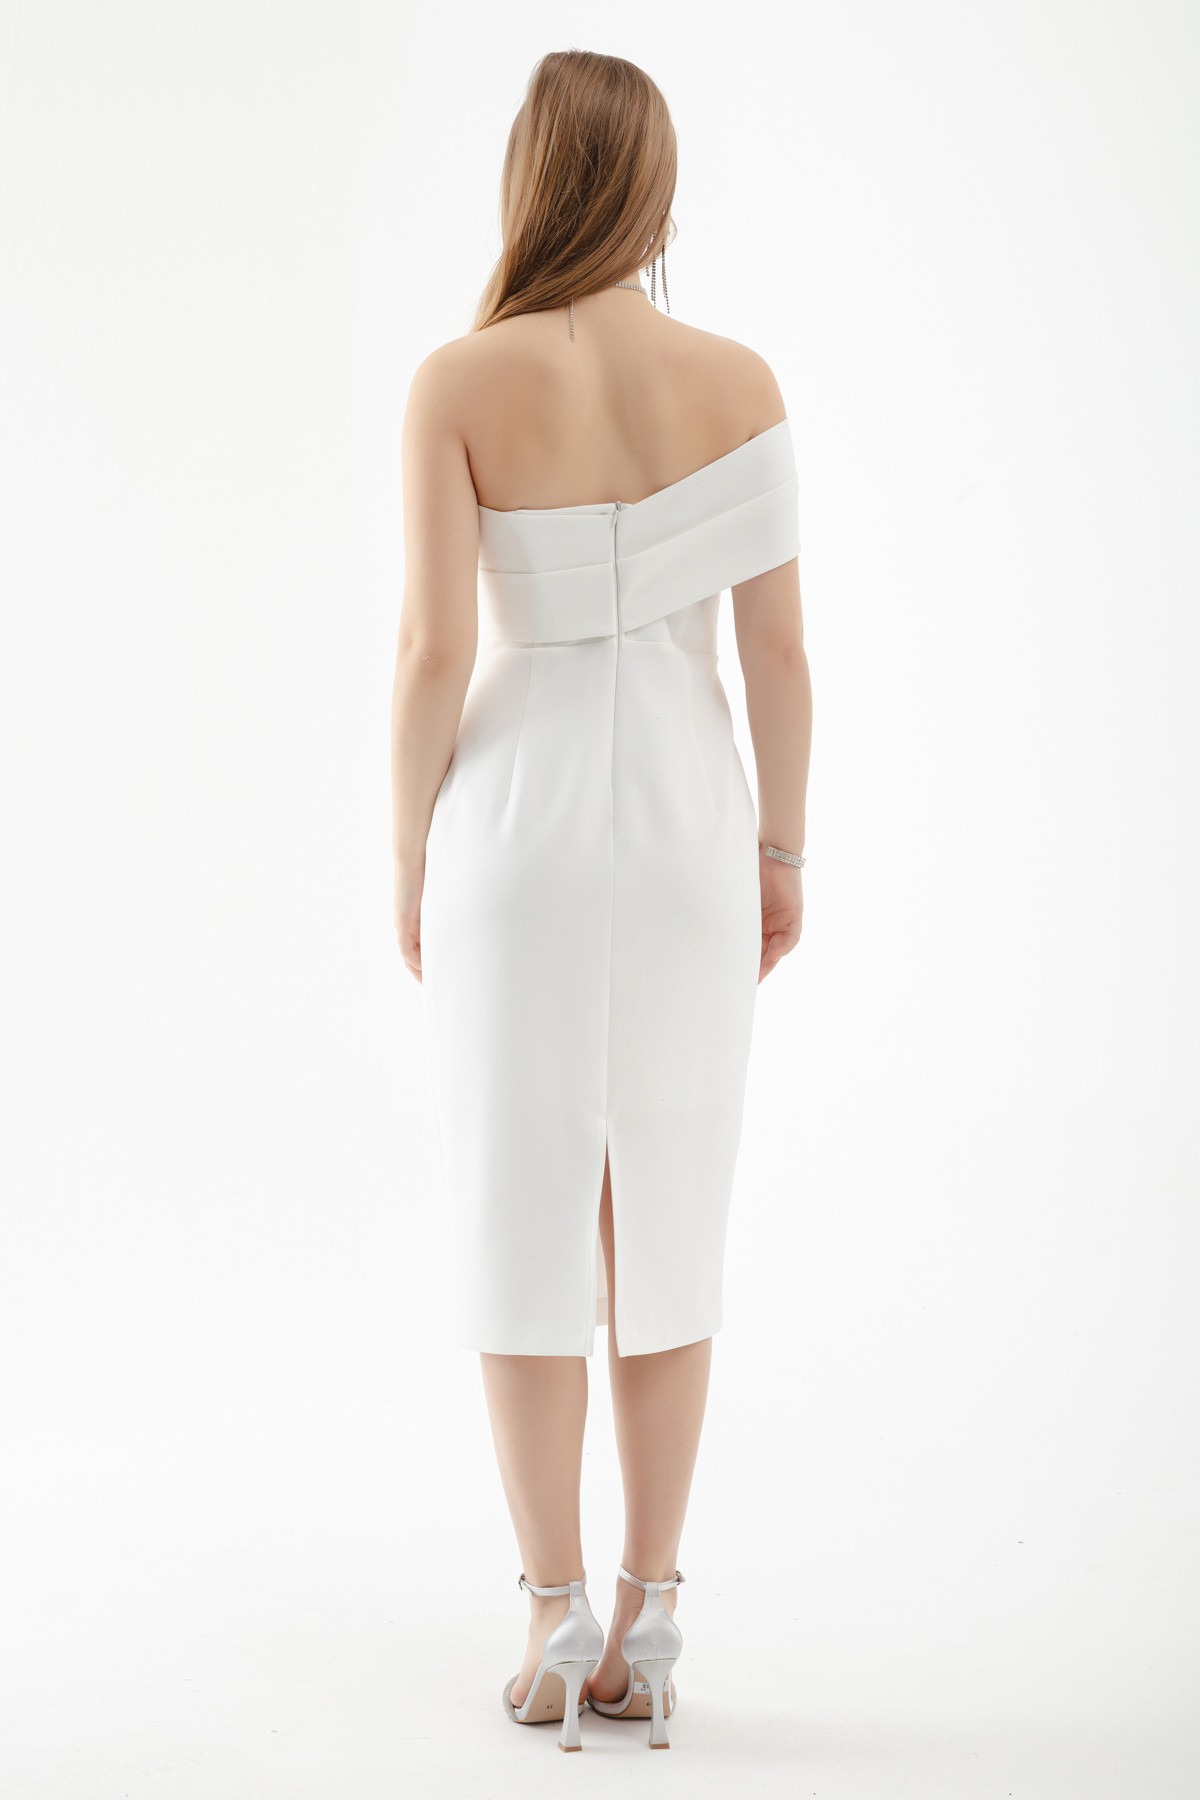 Kadın Çift Bandajlı Tek Omuz Midi Abiye Elbise - Beyaz